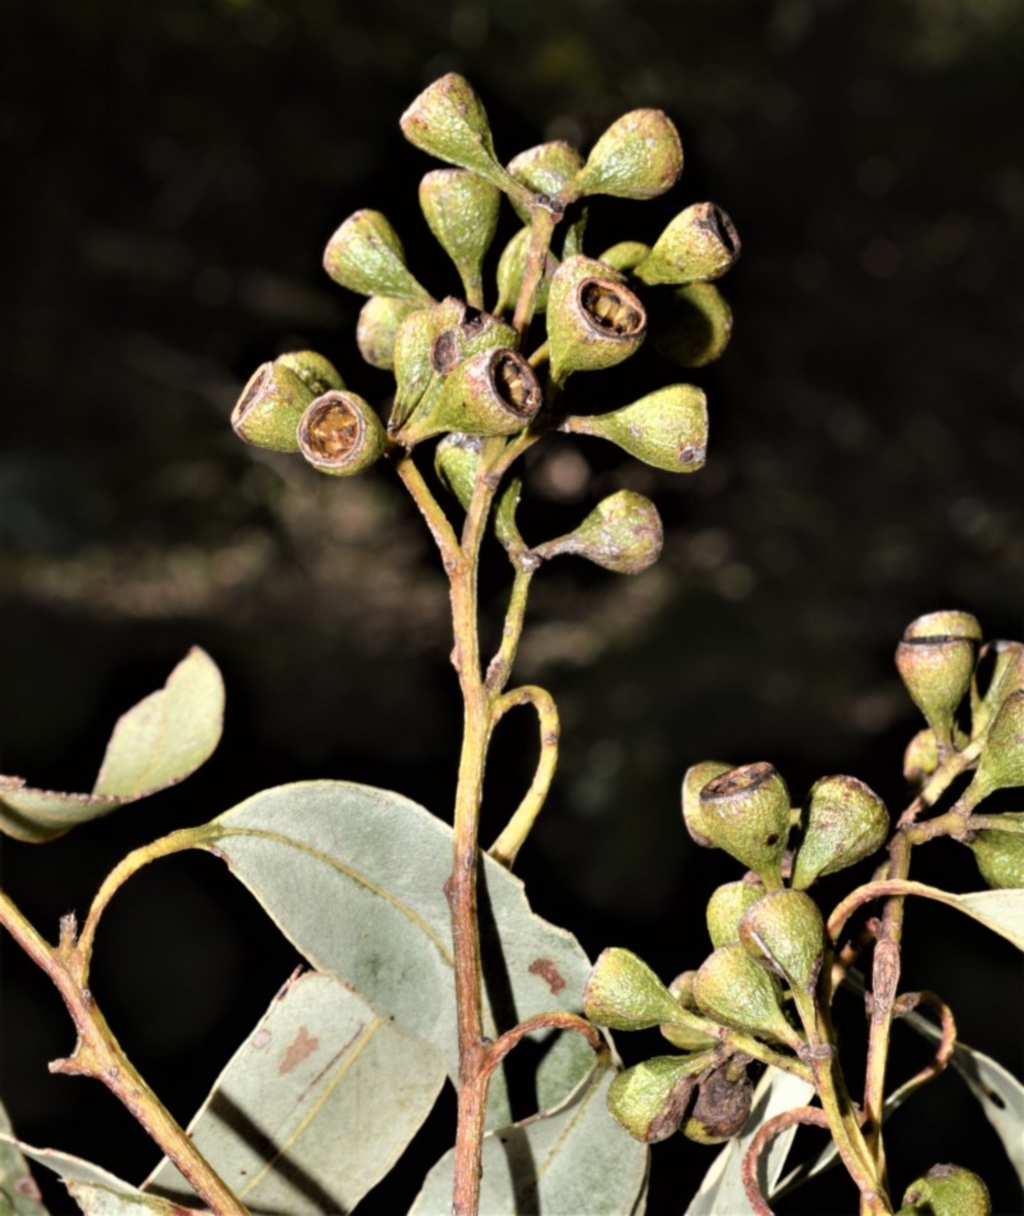 Eucalyptus paniculata at Berry, NSW - 21 Aug 2020